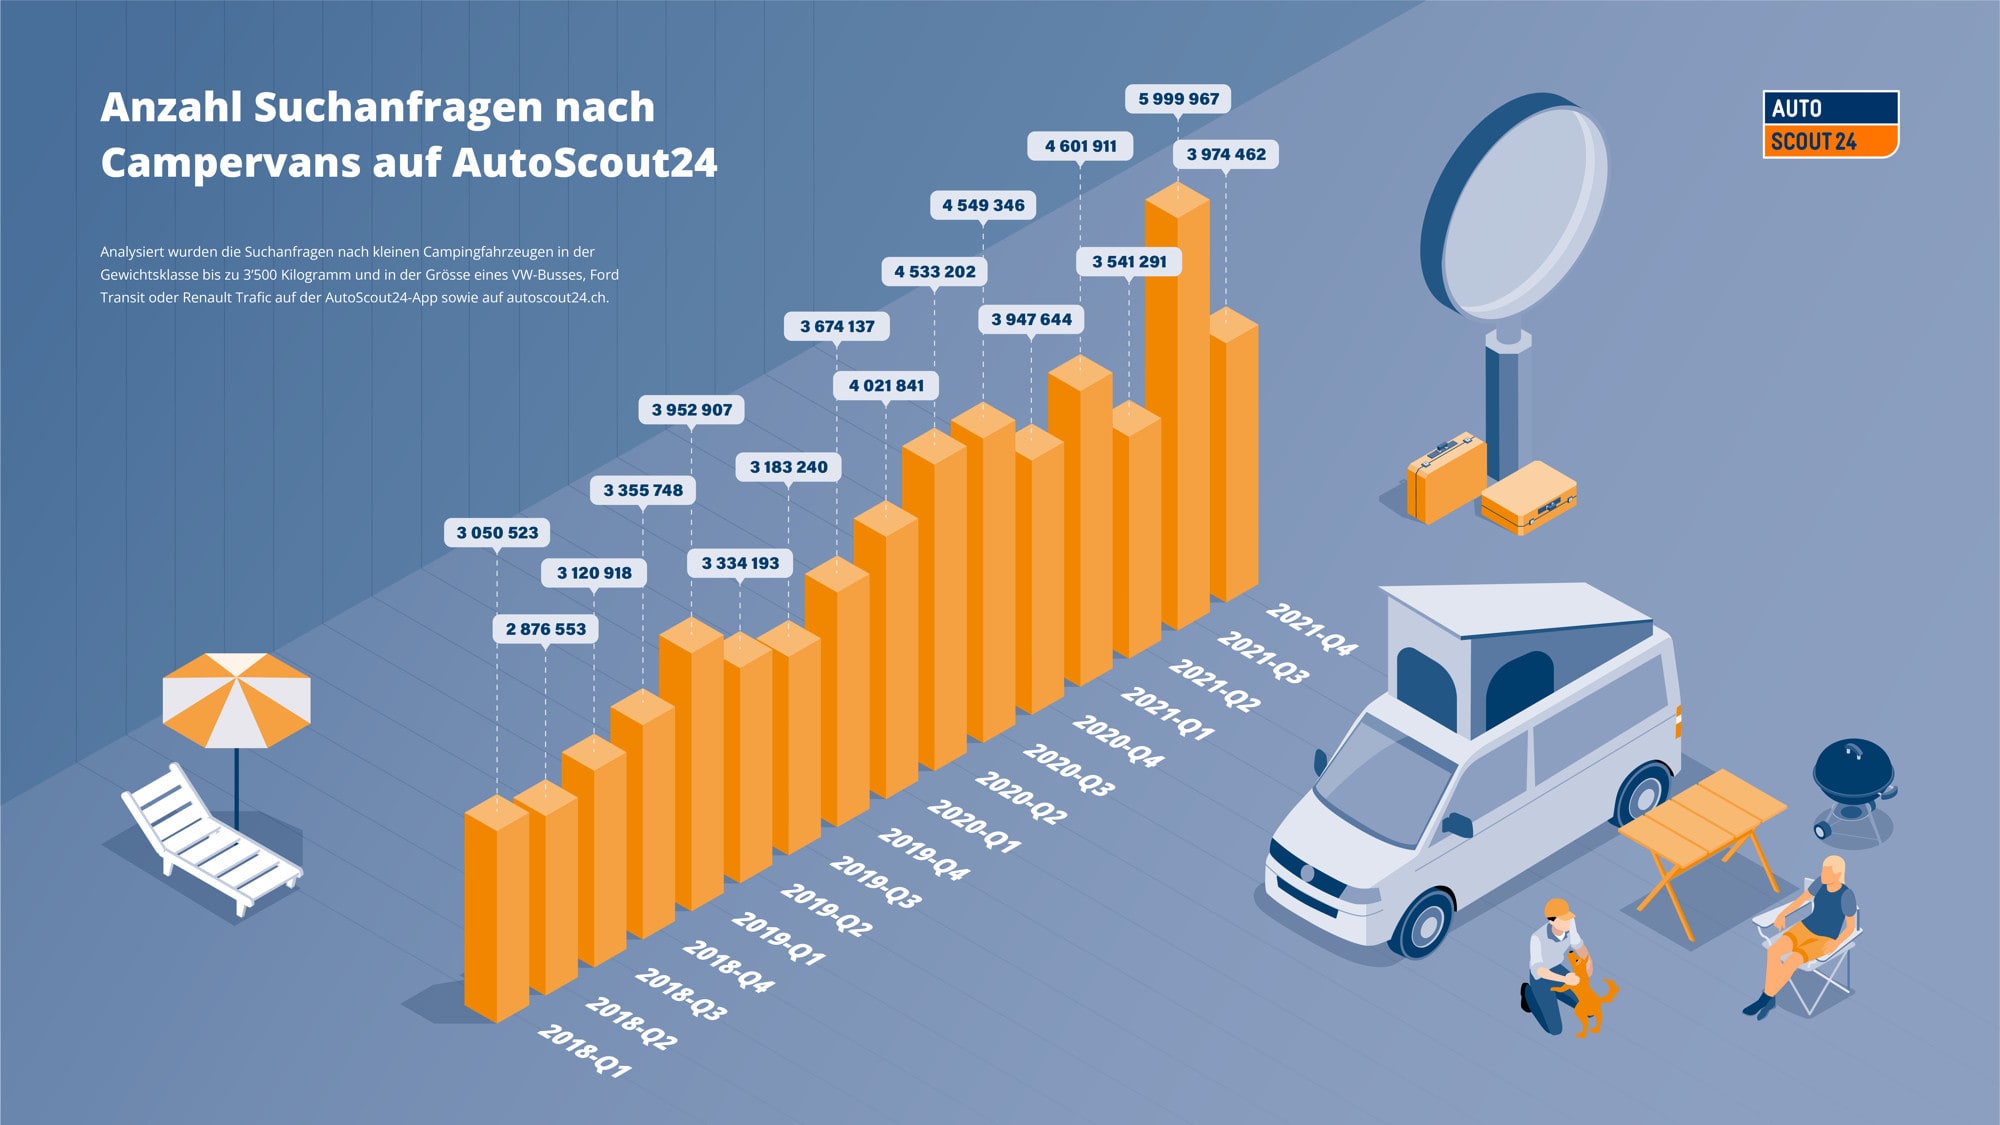 Infografik AutoScout24 Anzahl Suchanfragen nach Campervans